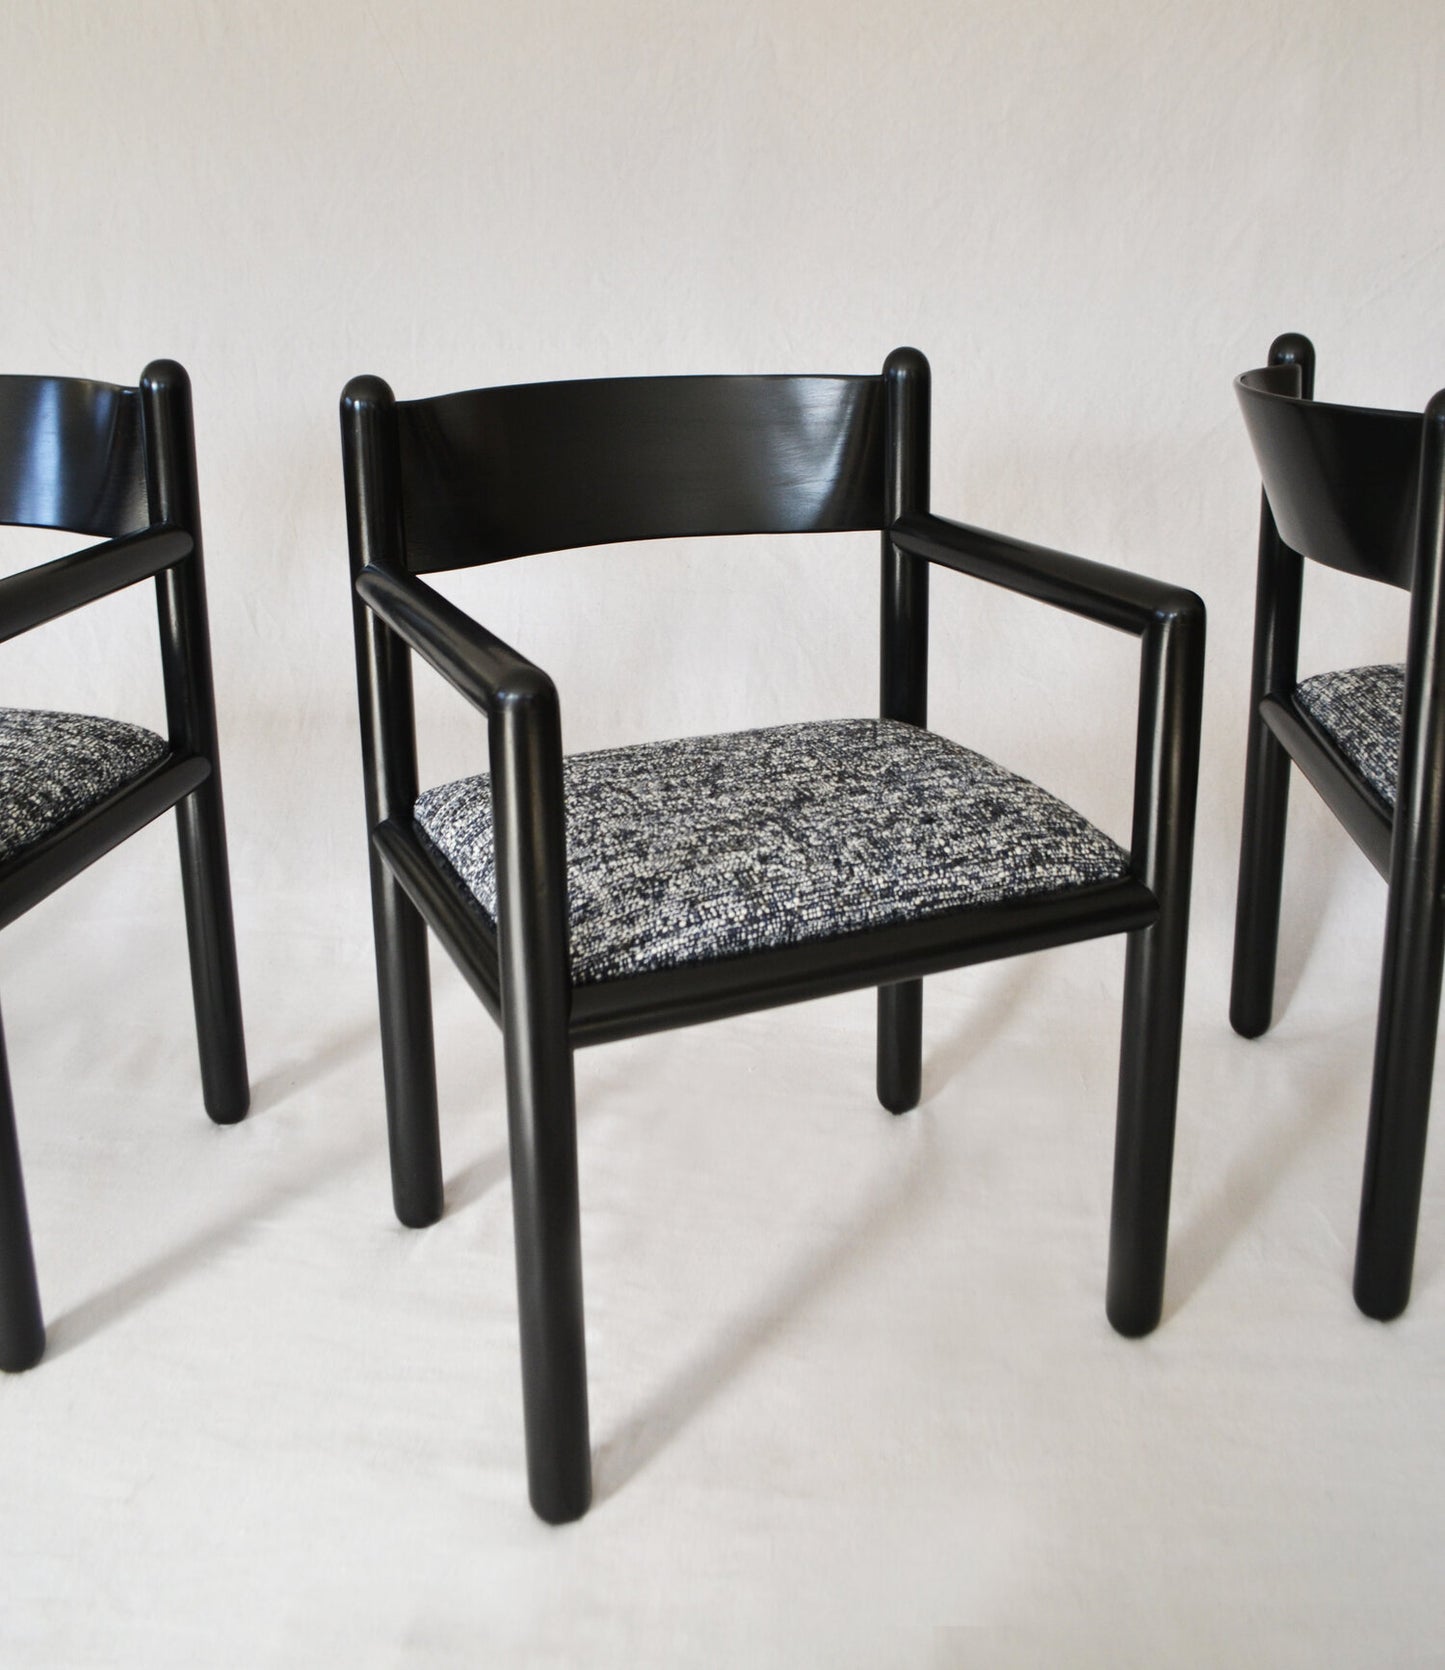 Massimo Vignelli Acorn Chair